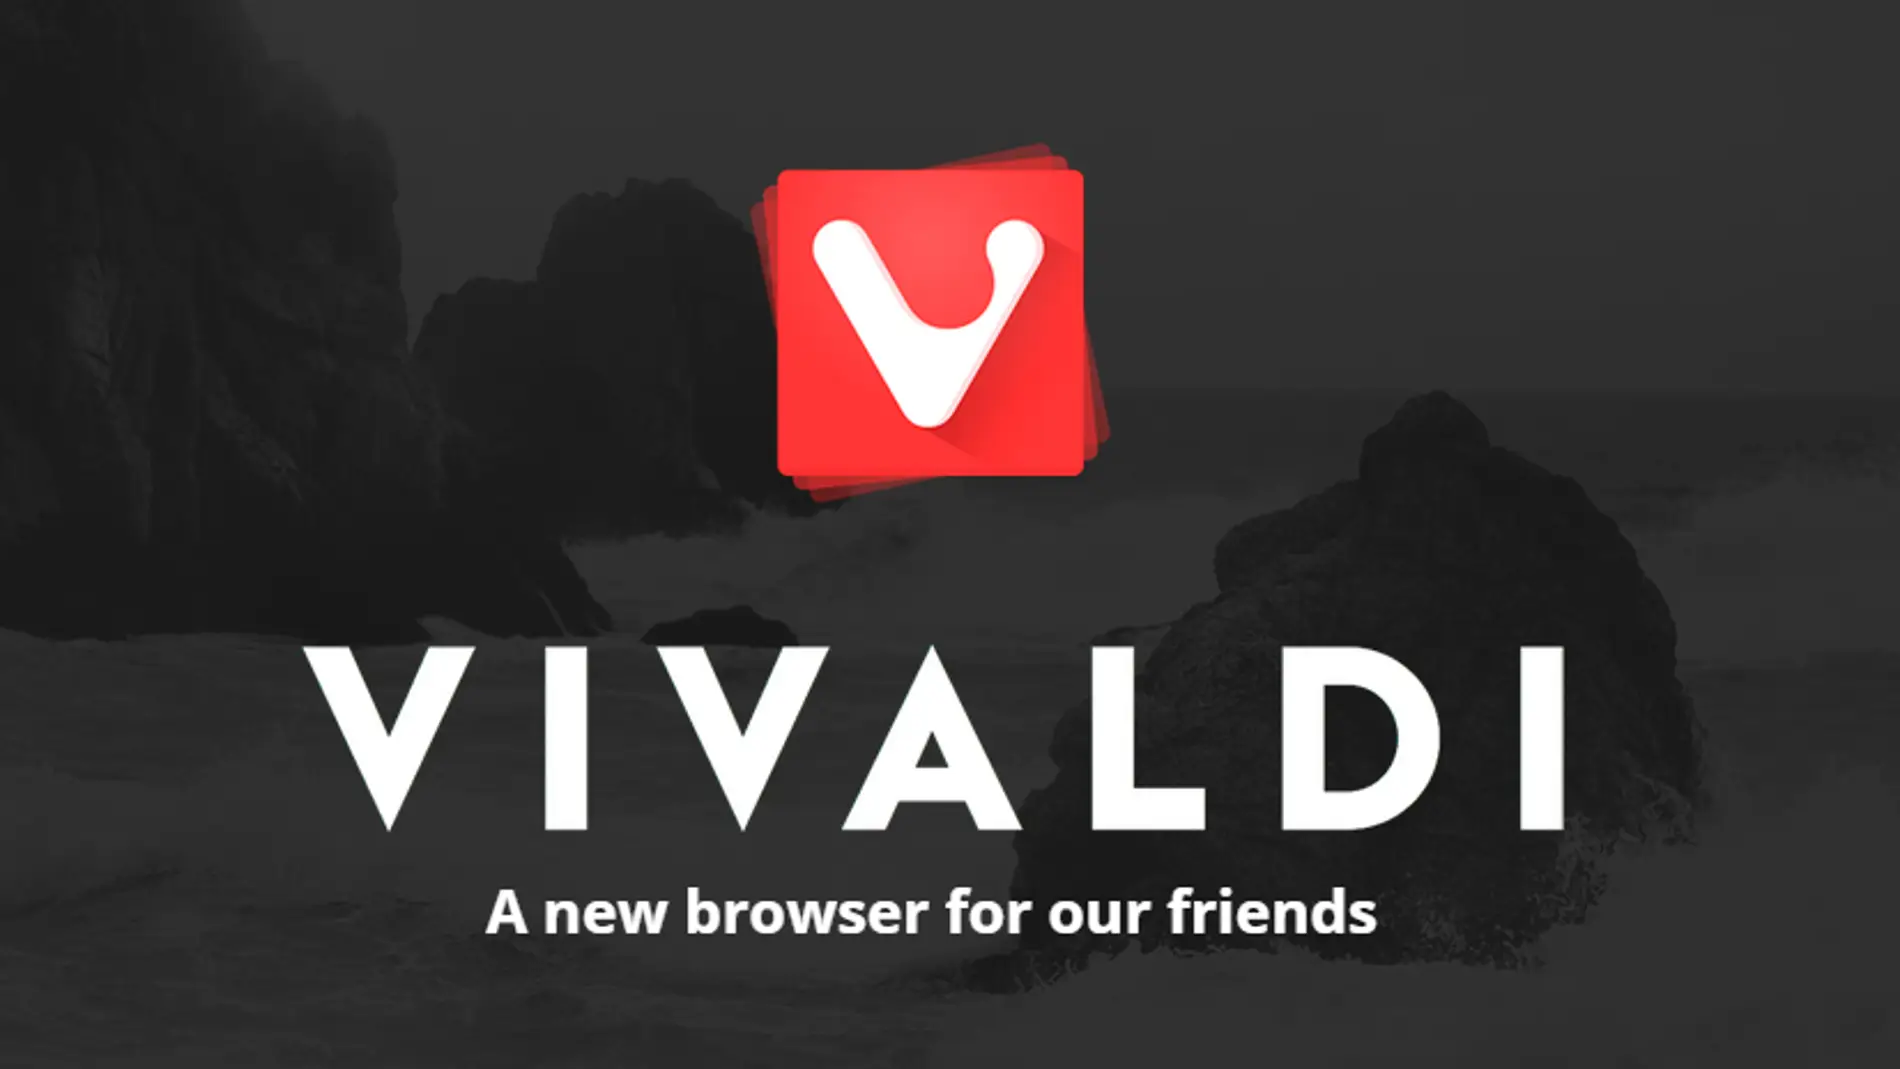 Nueva imagen corporativa de Vivaldi